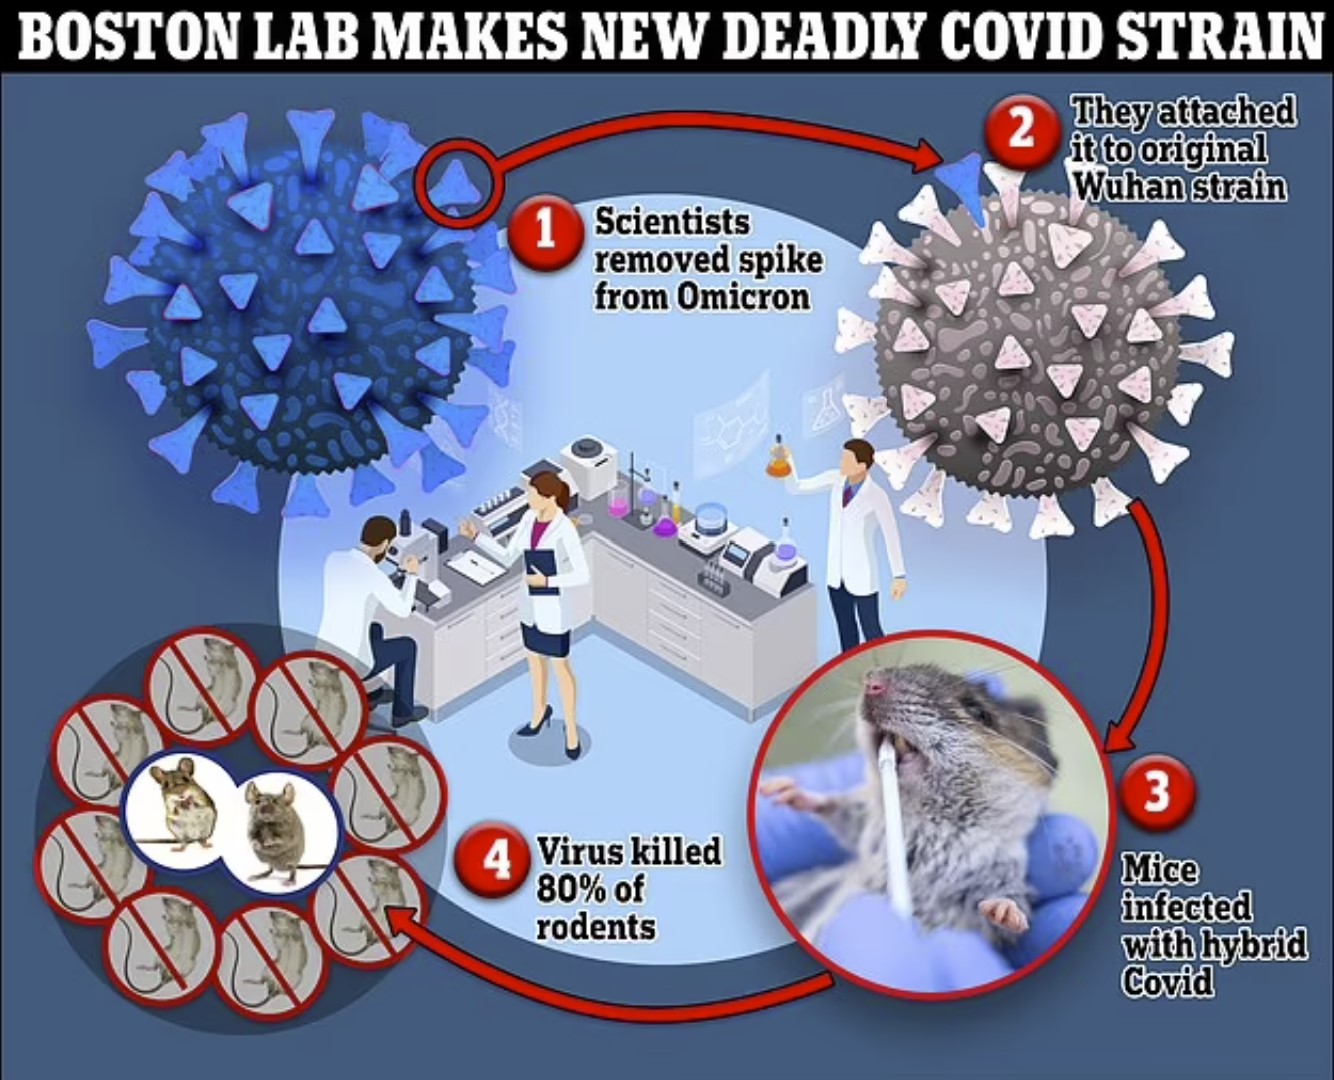 Возмущение, вызванное тем, что бостонская лаборатория создает новый смертельный штамм COVID с коэффициентом смертности 80%, повторяя опасные эксперименты, которые, как опасались, вызвали пандемию.